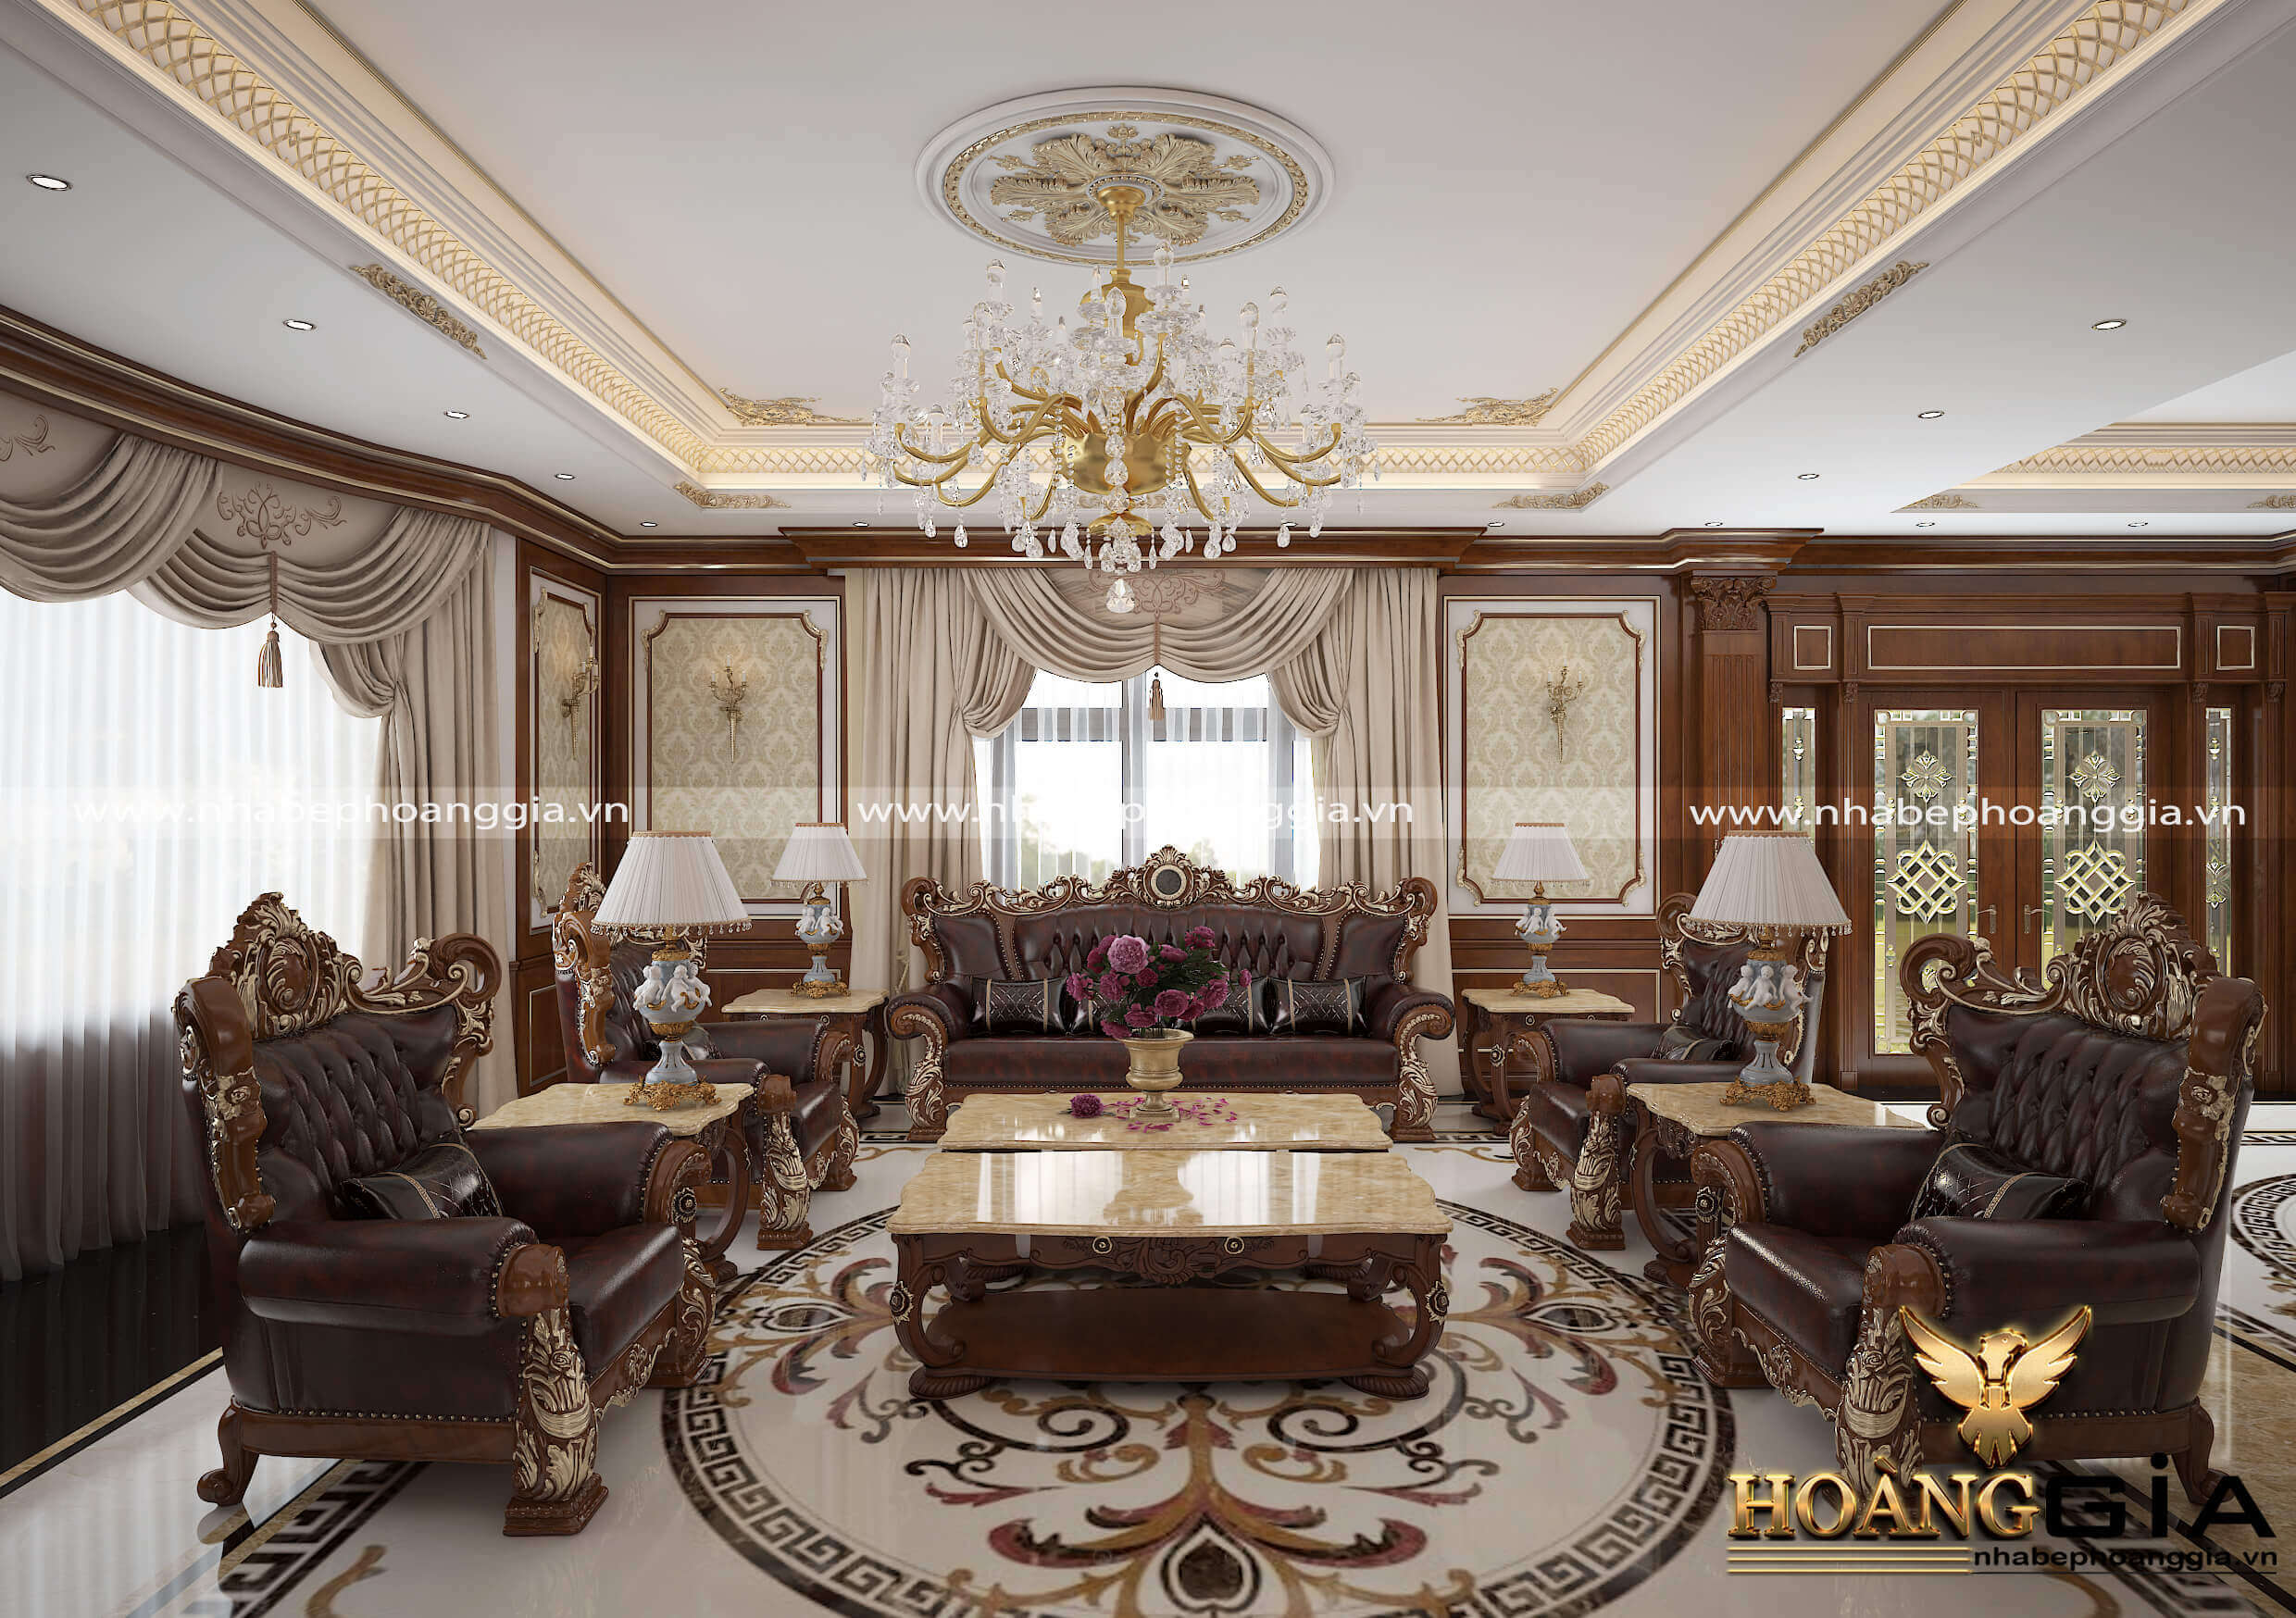 100+ mẫu trang trí phòng khách kiểu cổ điển đẹp và sang trọng nhất